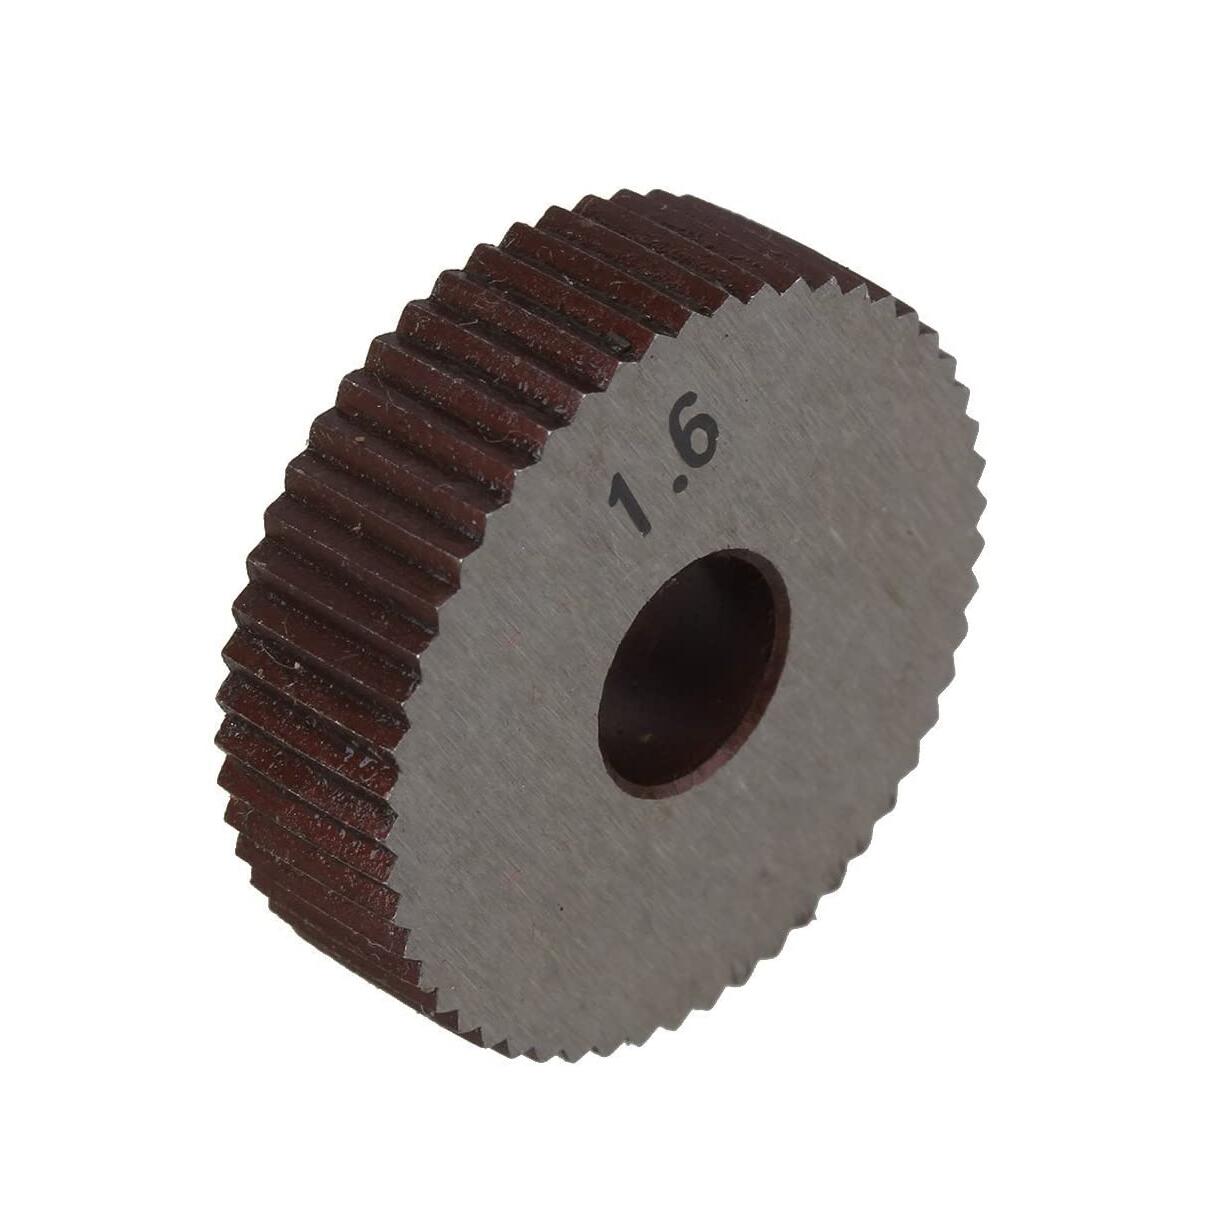 Rändelwerkzeug mit 1 mm Teilung und 28 mm Außendurchmesser, einzelnes gerades Rad